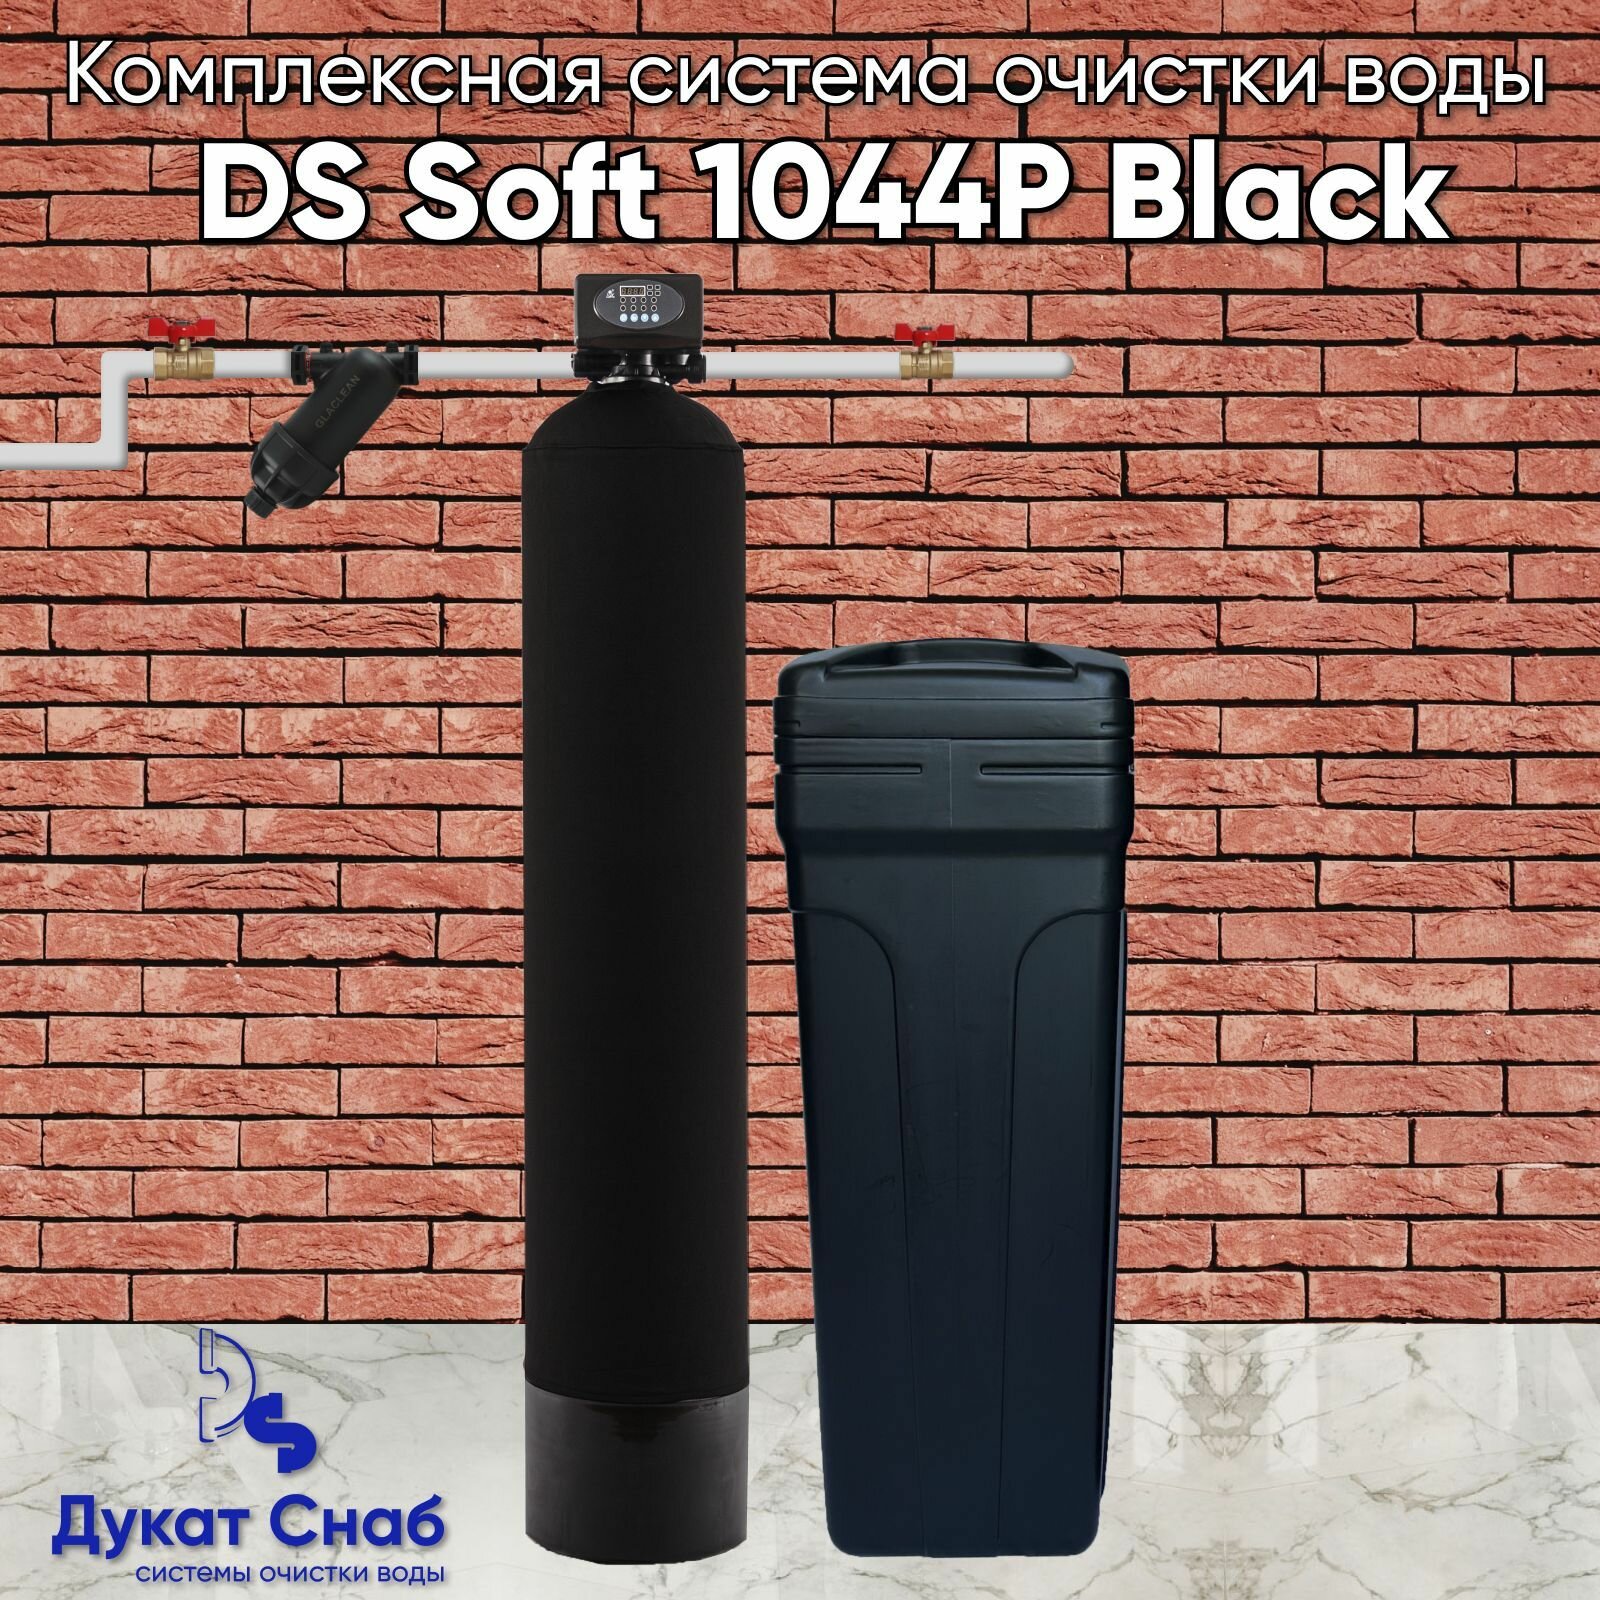 Автоматическая система очистки воды DS 1044P Black. Комплект фильтр умягчения и обезжелезивания воды для дома, квартиры и дачи под загрузку. Потребители до 3 человек.